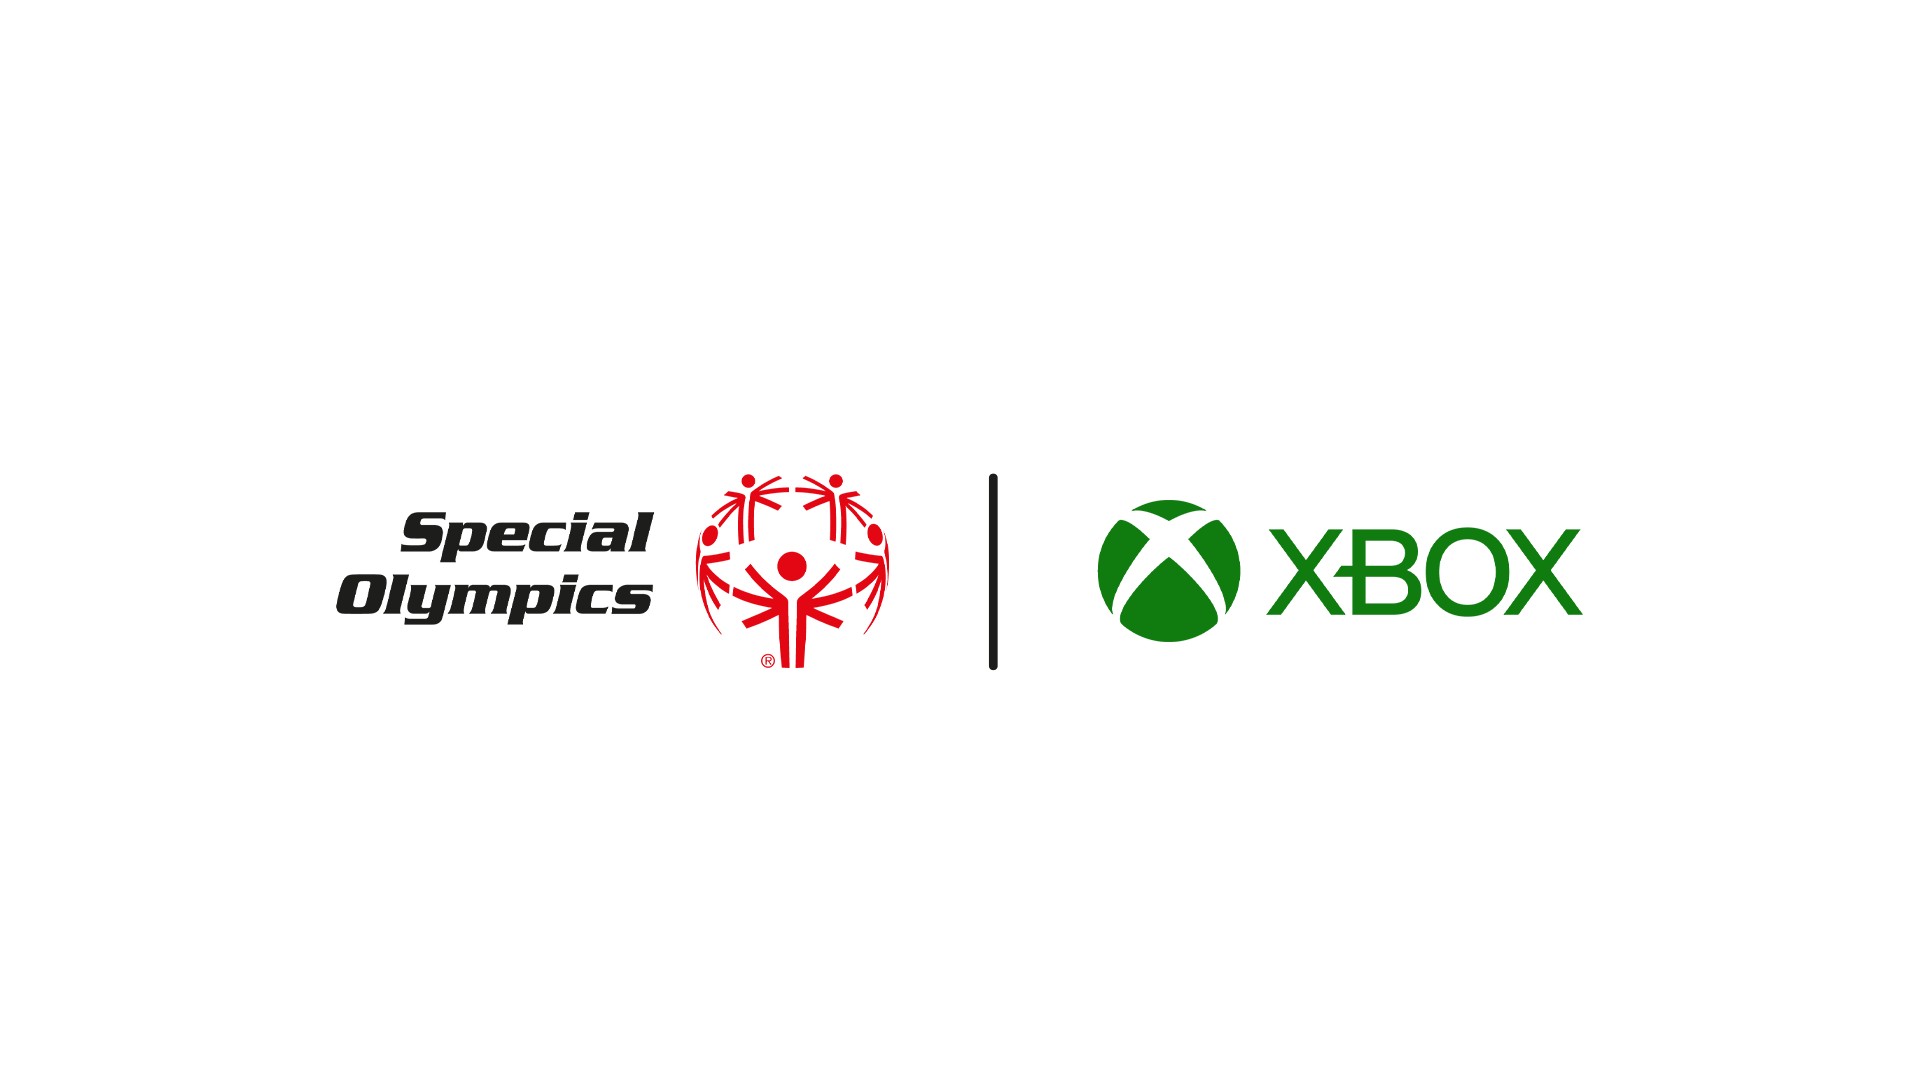 Zwei Logos nebeneinander auf weißem Hintergrund. Das linke Logo ist das Special Olympics-Logo, das rechte das Xbox-Logo.